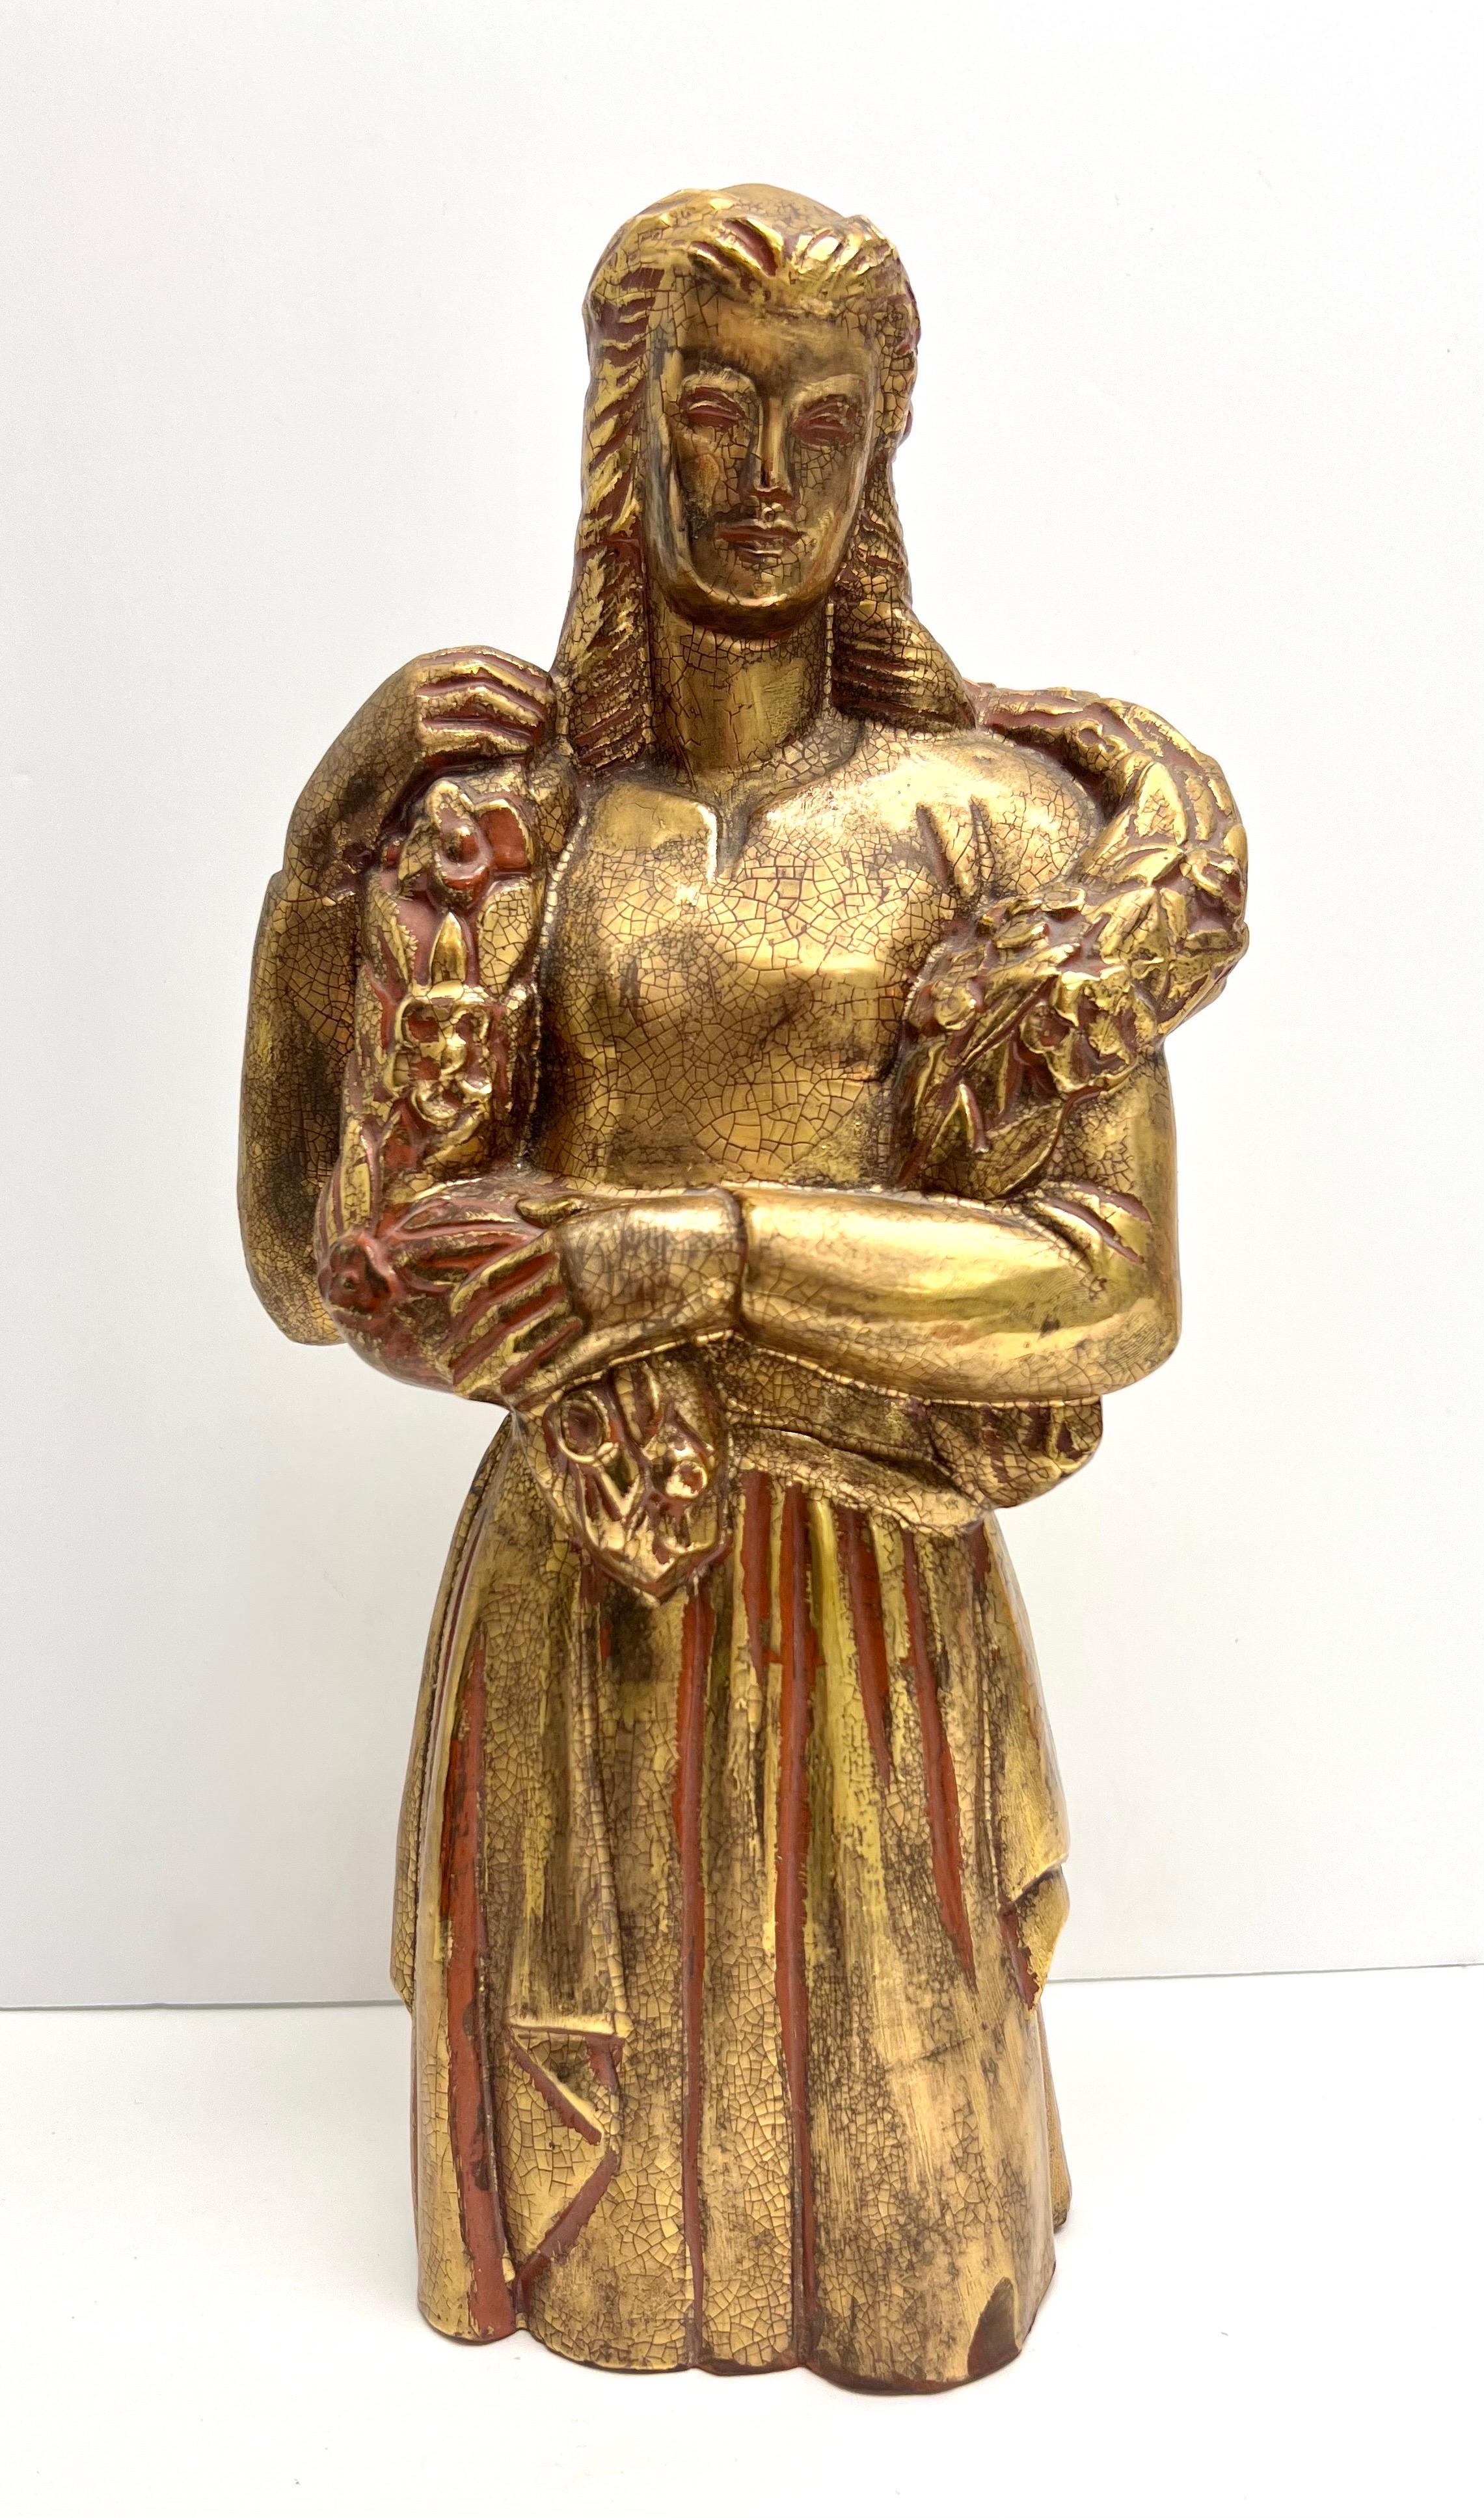 Beautiful terracotta sculpture with a gilt glaze.